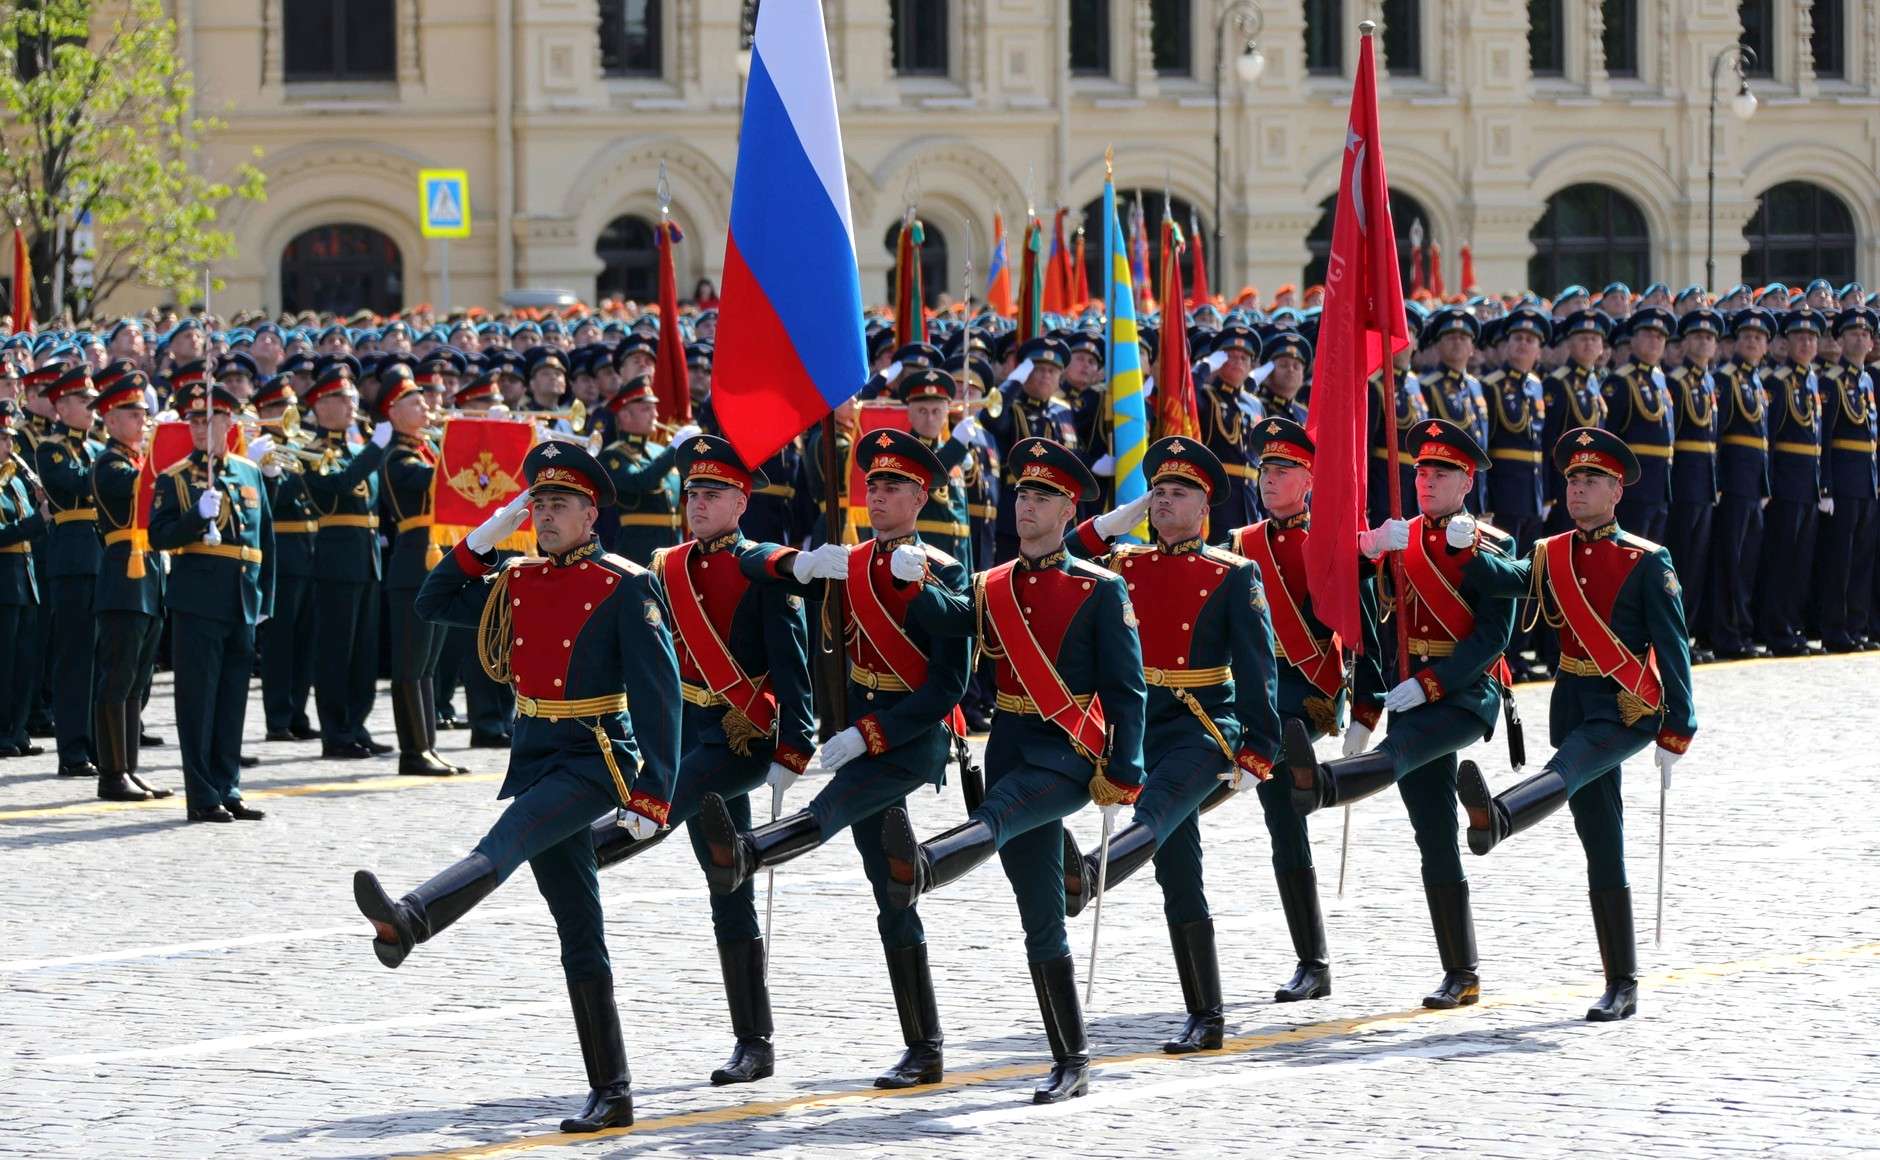 Ρωσία: Έκρηξη σημειώθηκε σε στρατιωτική ακαδημία στην Αγία Πετρούπολη